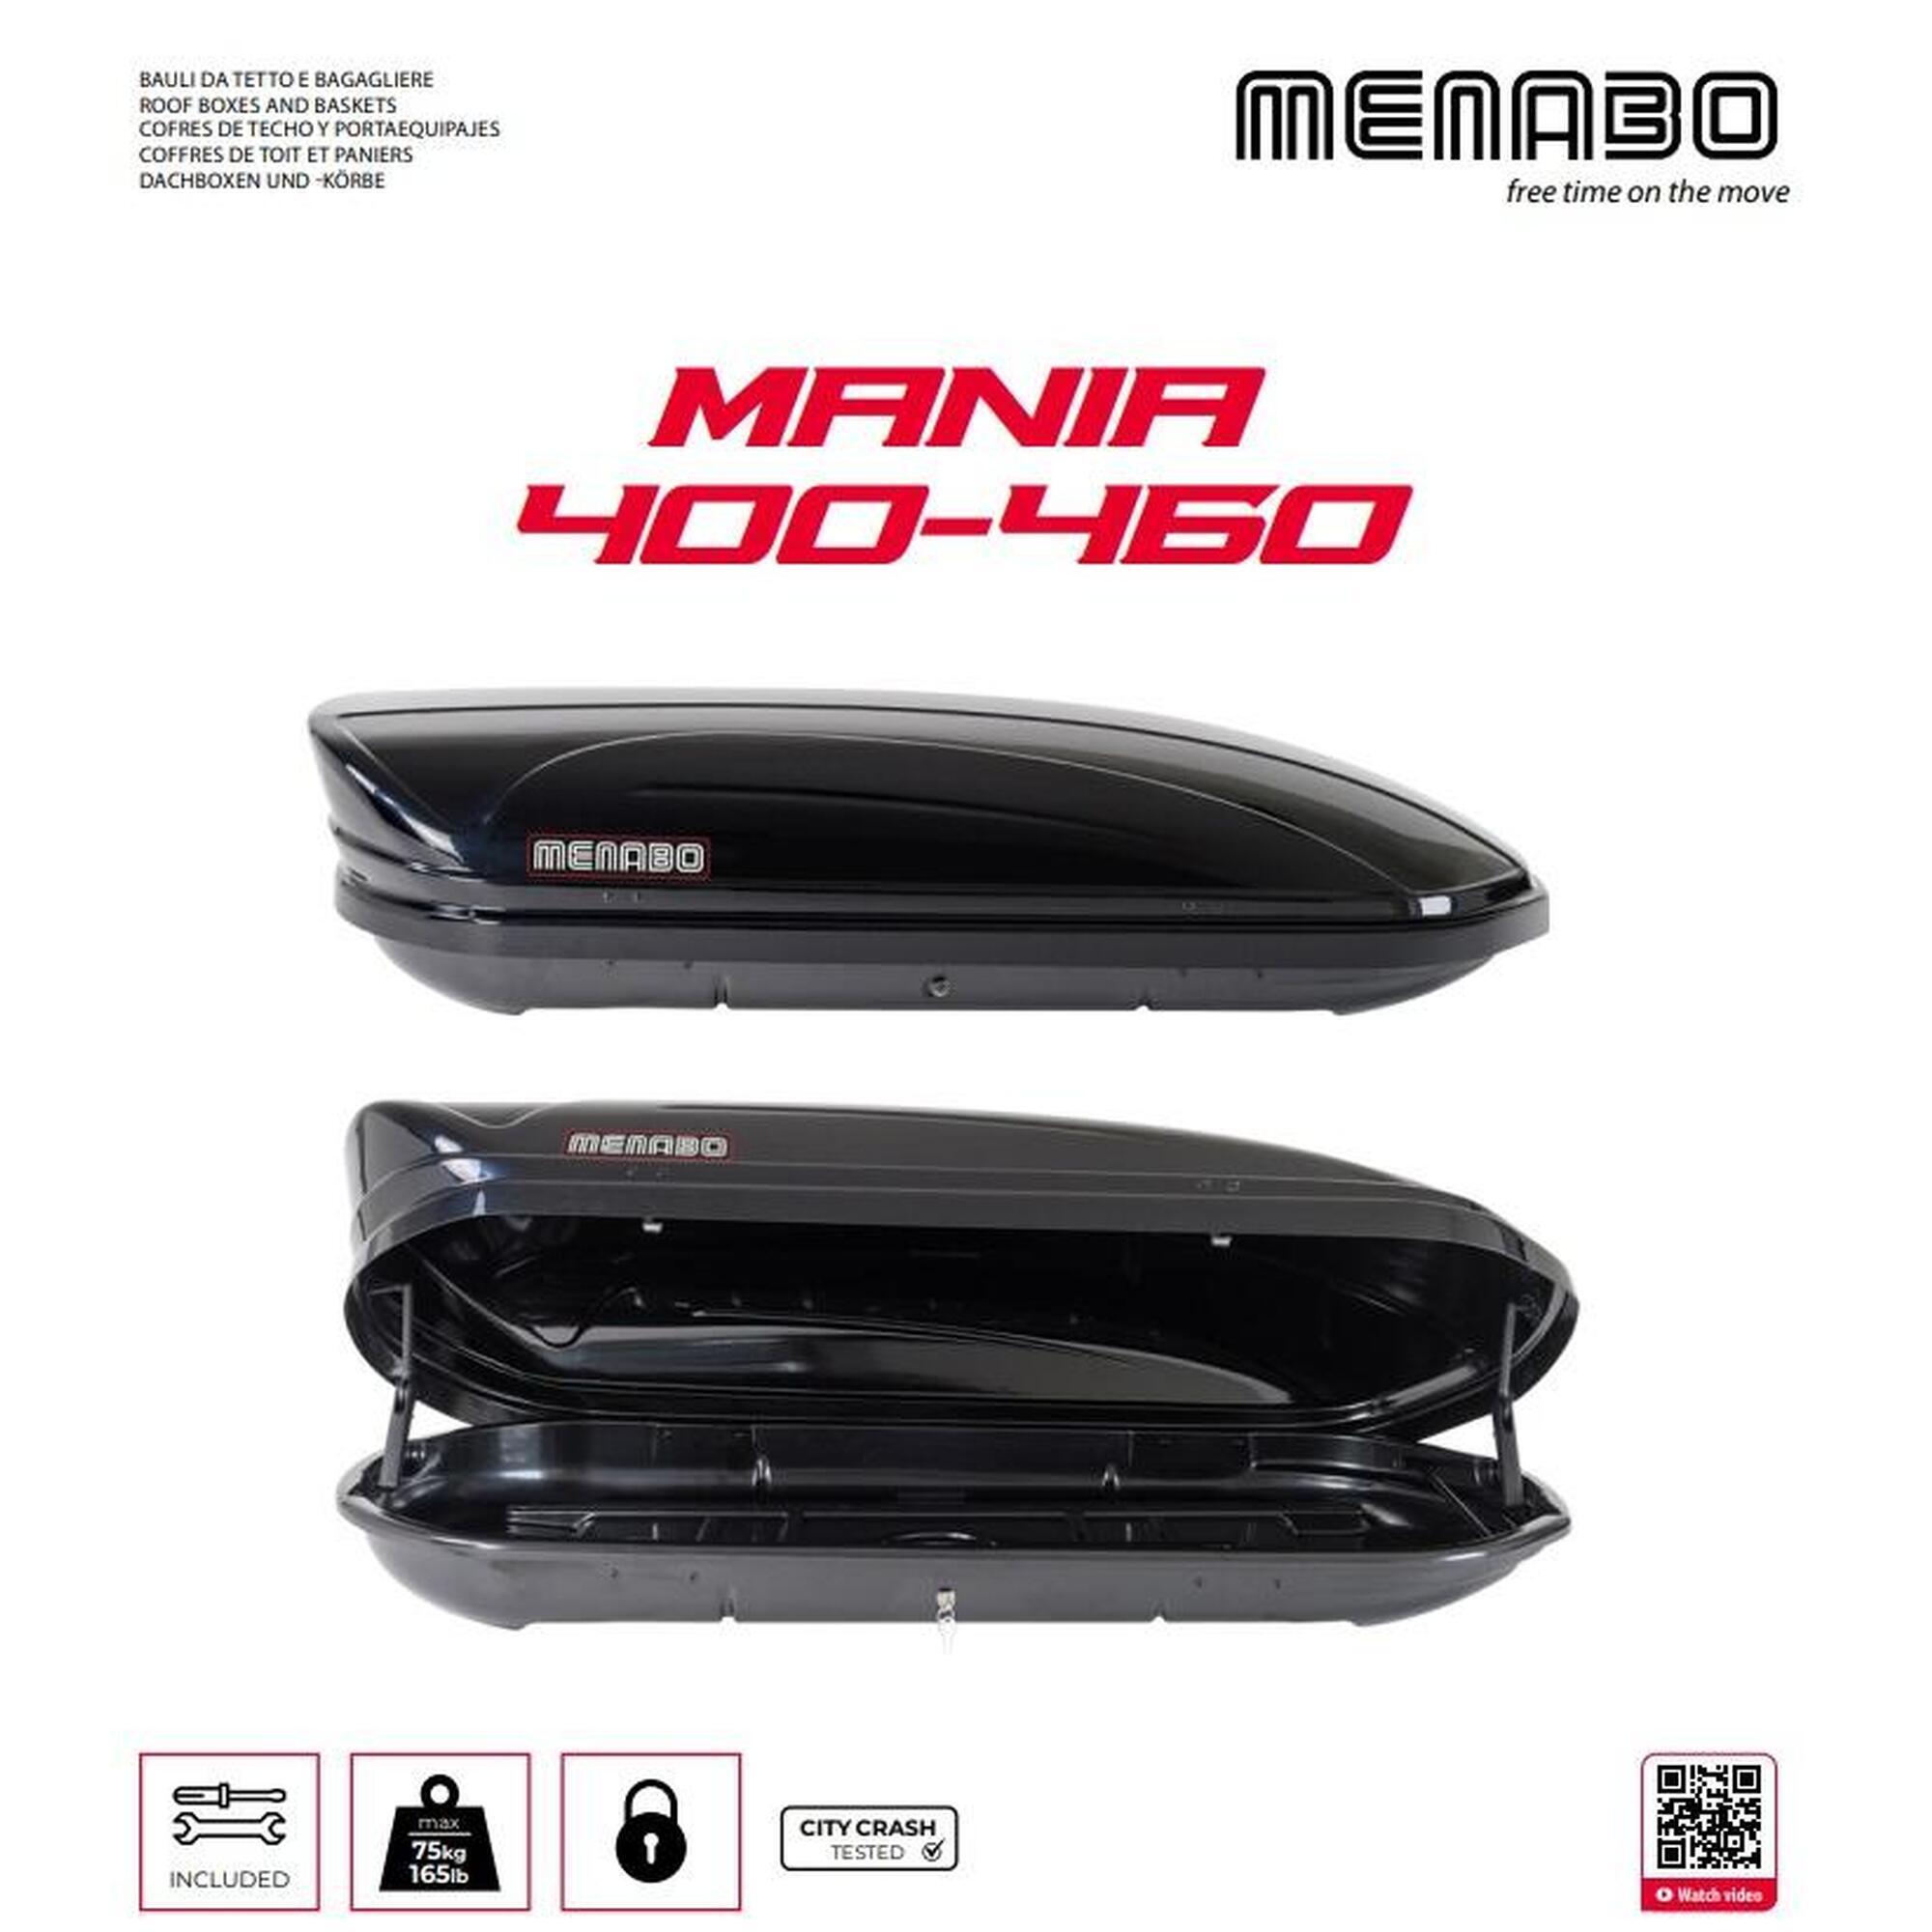 Cutie portbagaj Menabo Mania 460 ABS Black, 198x79x37cm